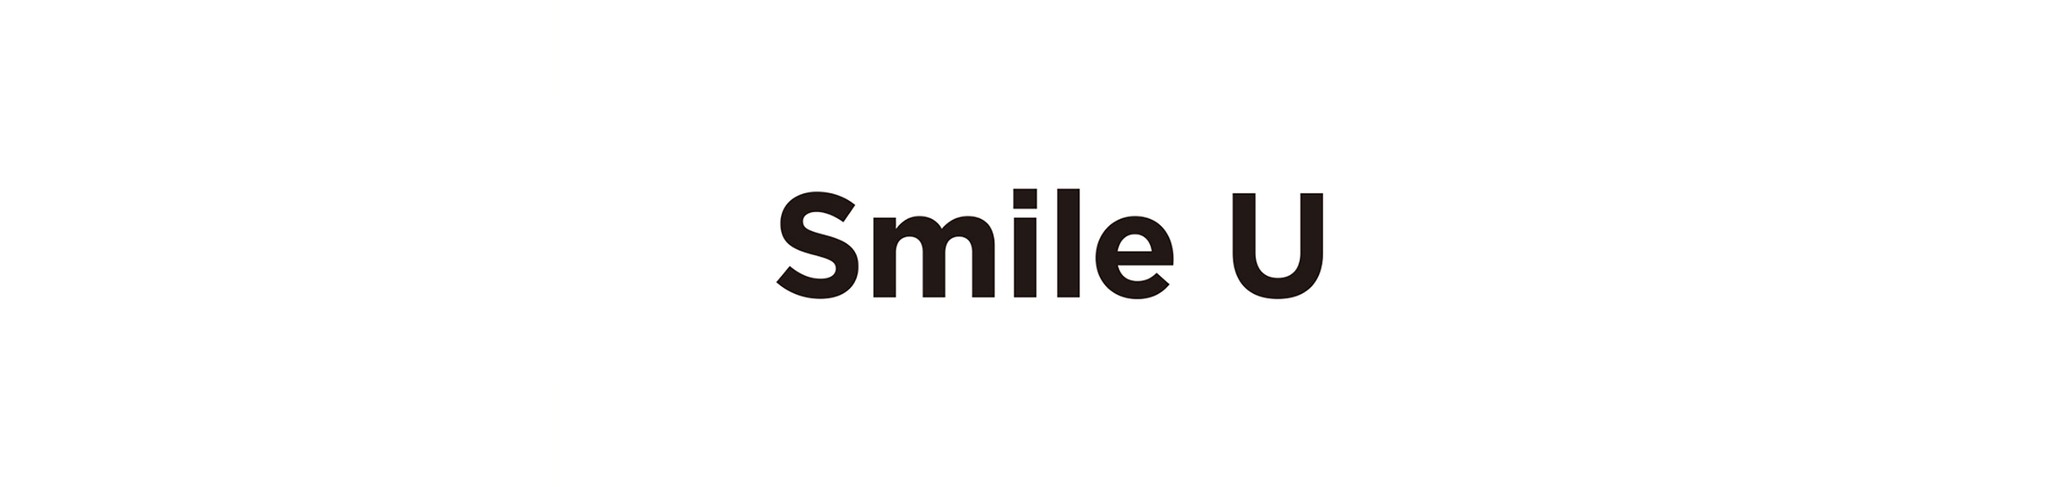 Smile U